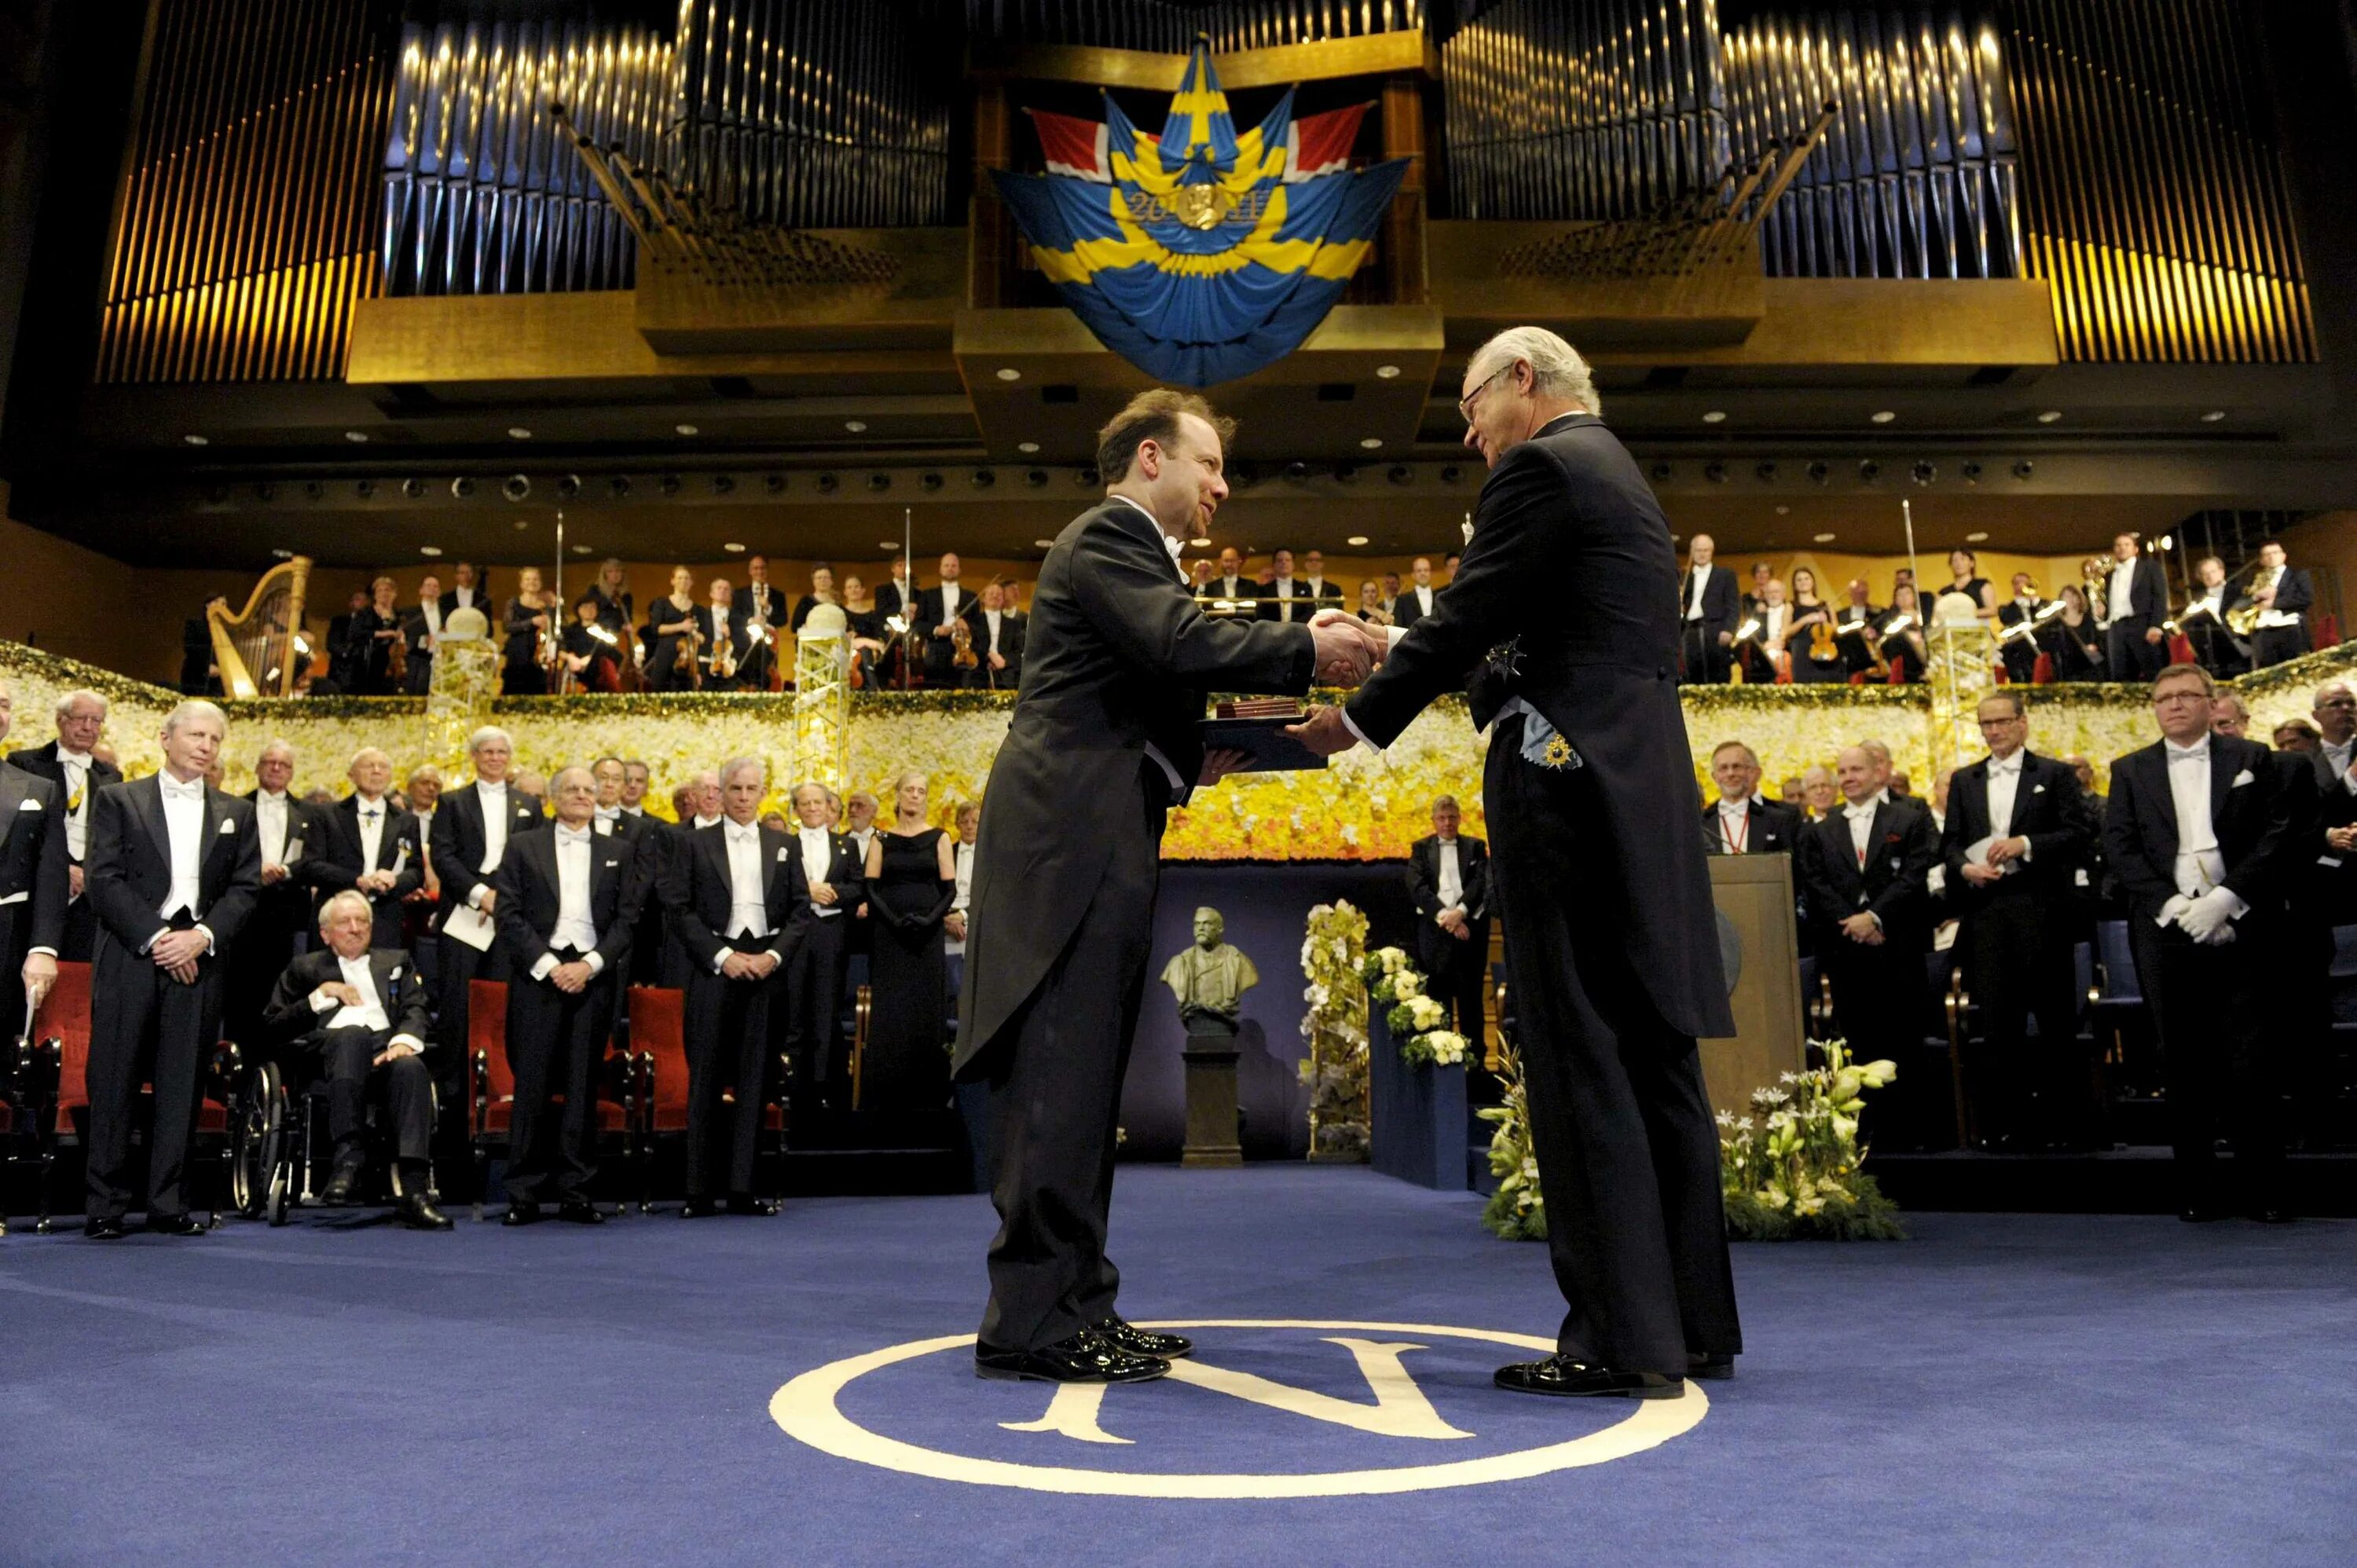 Награждение Нобелевской премией. Церемония вручения Нобелевской премии в Швеции. Нобелевский день — церемония вручения Нобелевской премии.